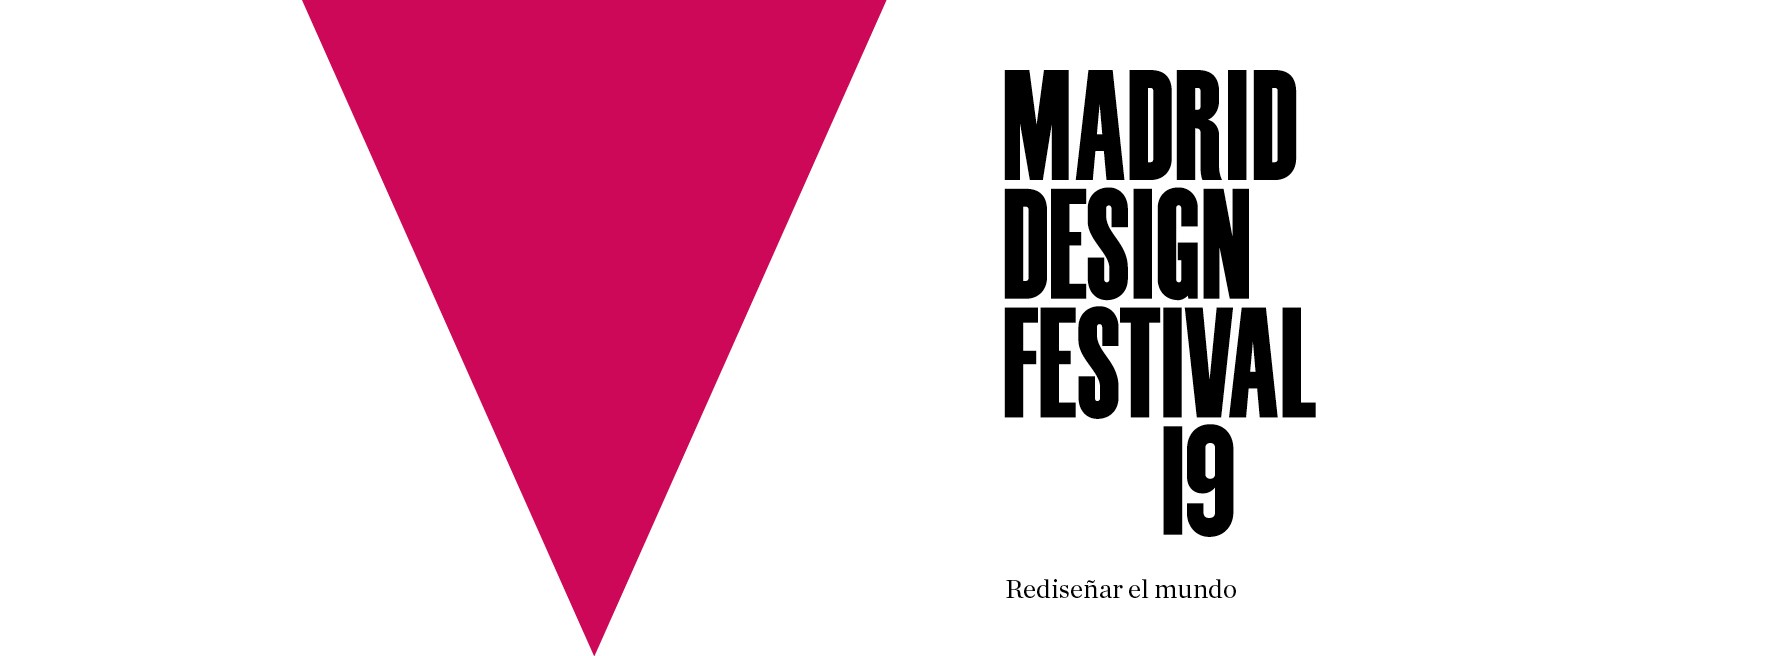 el-solitario-impostor-madrid-design-festival-4